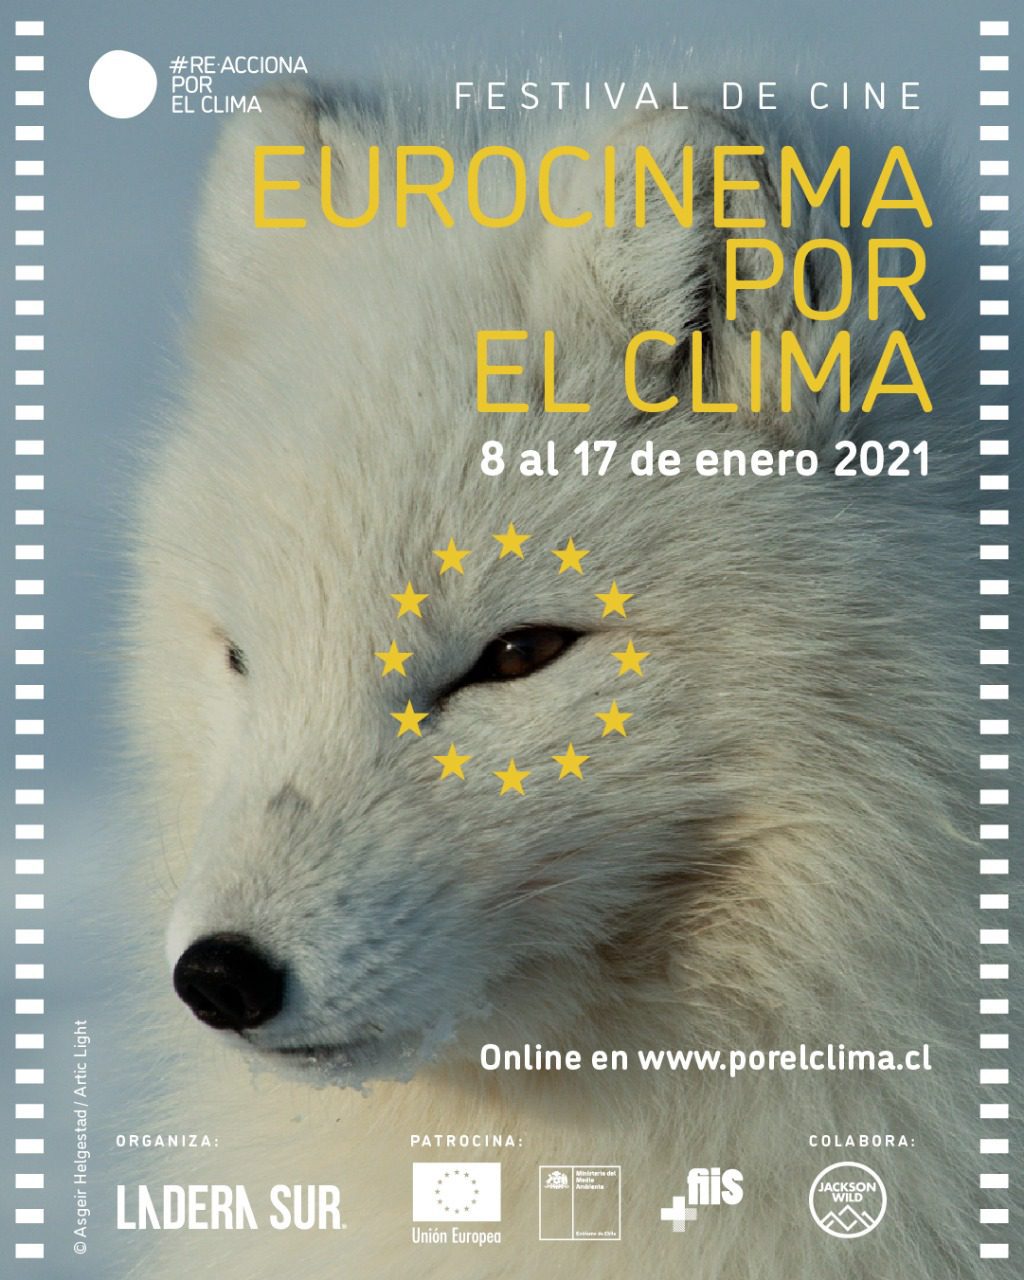 ¡Aquí el link directo para ver gratis Eurocinema por el Clima! No te pierdas este festival de cine sobre cambio climático